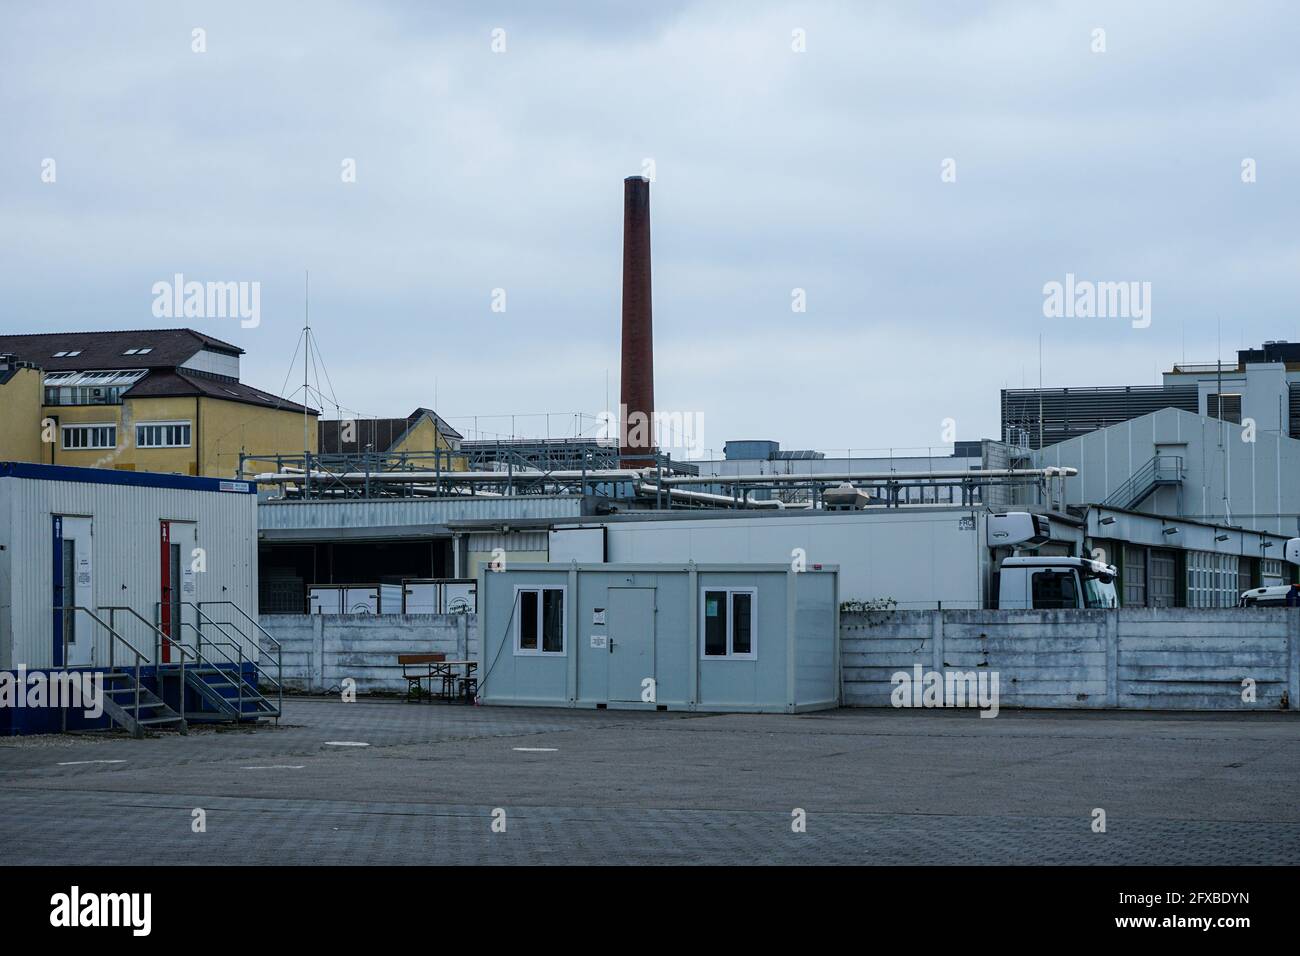 Blick auf ein Industriegebiet im Münchner Stadtteil Obersendling, das sich im Wandel befindet. Stockfoto